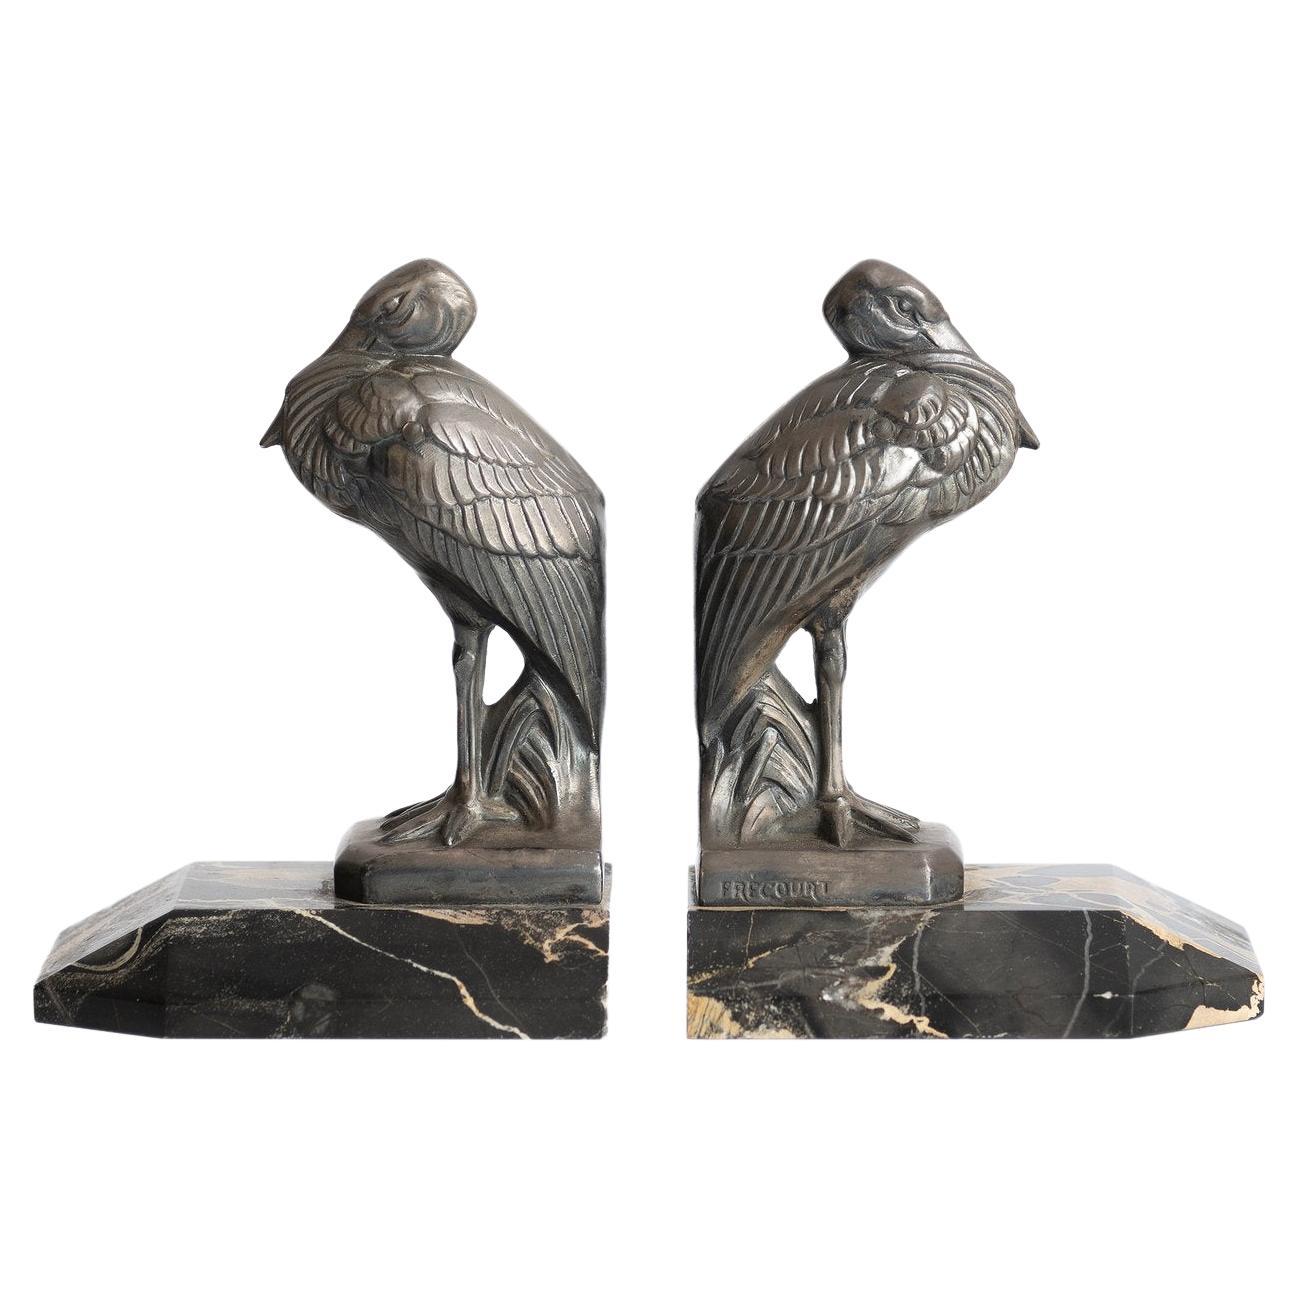 Antique Art Deco ''Heron'' Bookends by Maurice Frecourt 1930 France Art Nouveau